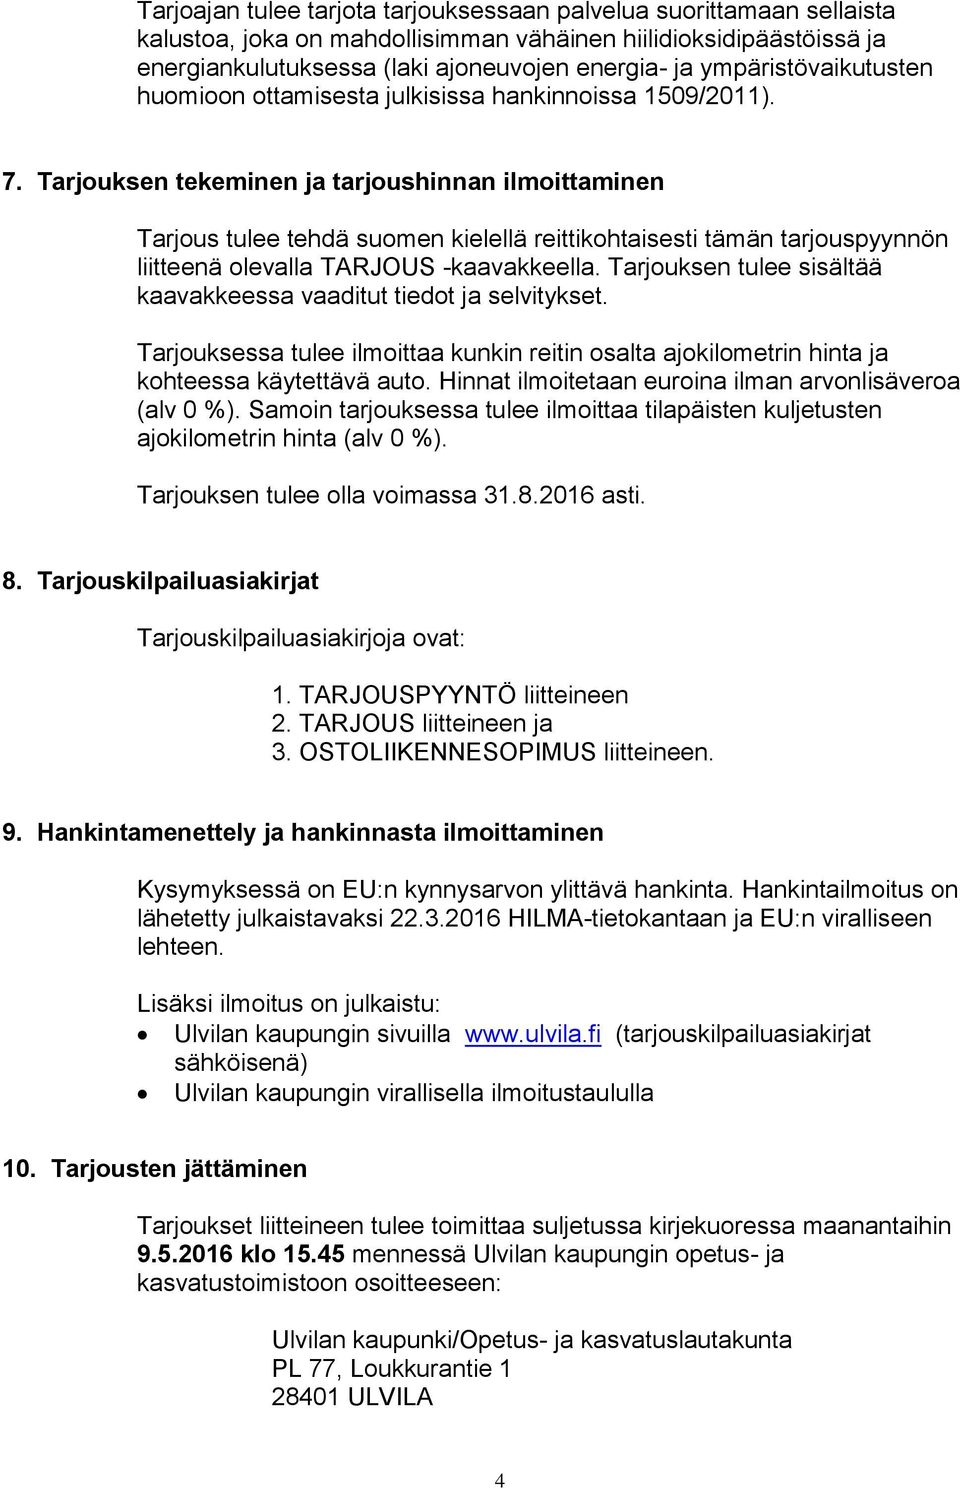 Tarjouksen tekeminen ja tarjoushinnan ilmoittaminen Tarjous tulee tehdä suomen kielellä reittikohtaisesti tämän tarjouspyynnön liitteenä olevalla TARJOUS -kaavakkeella.